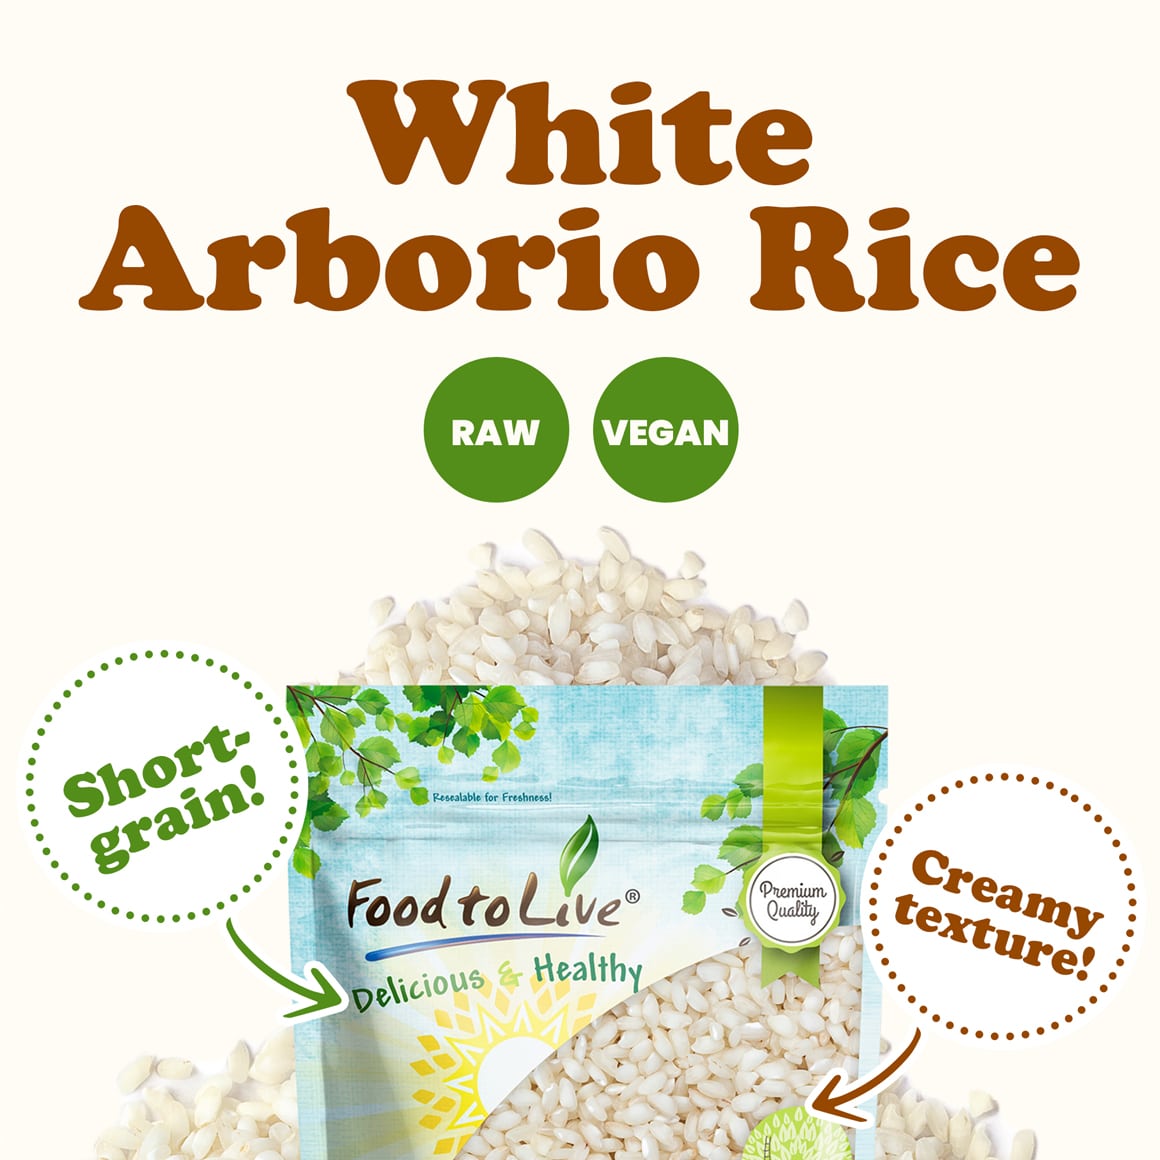 white-arborio-rice-2-min